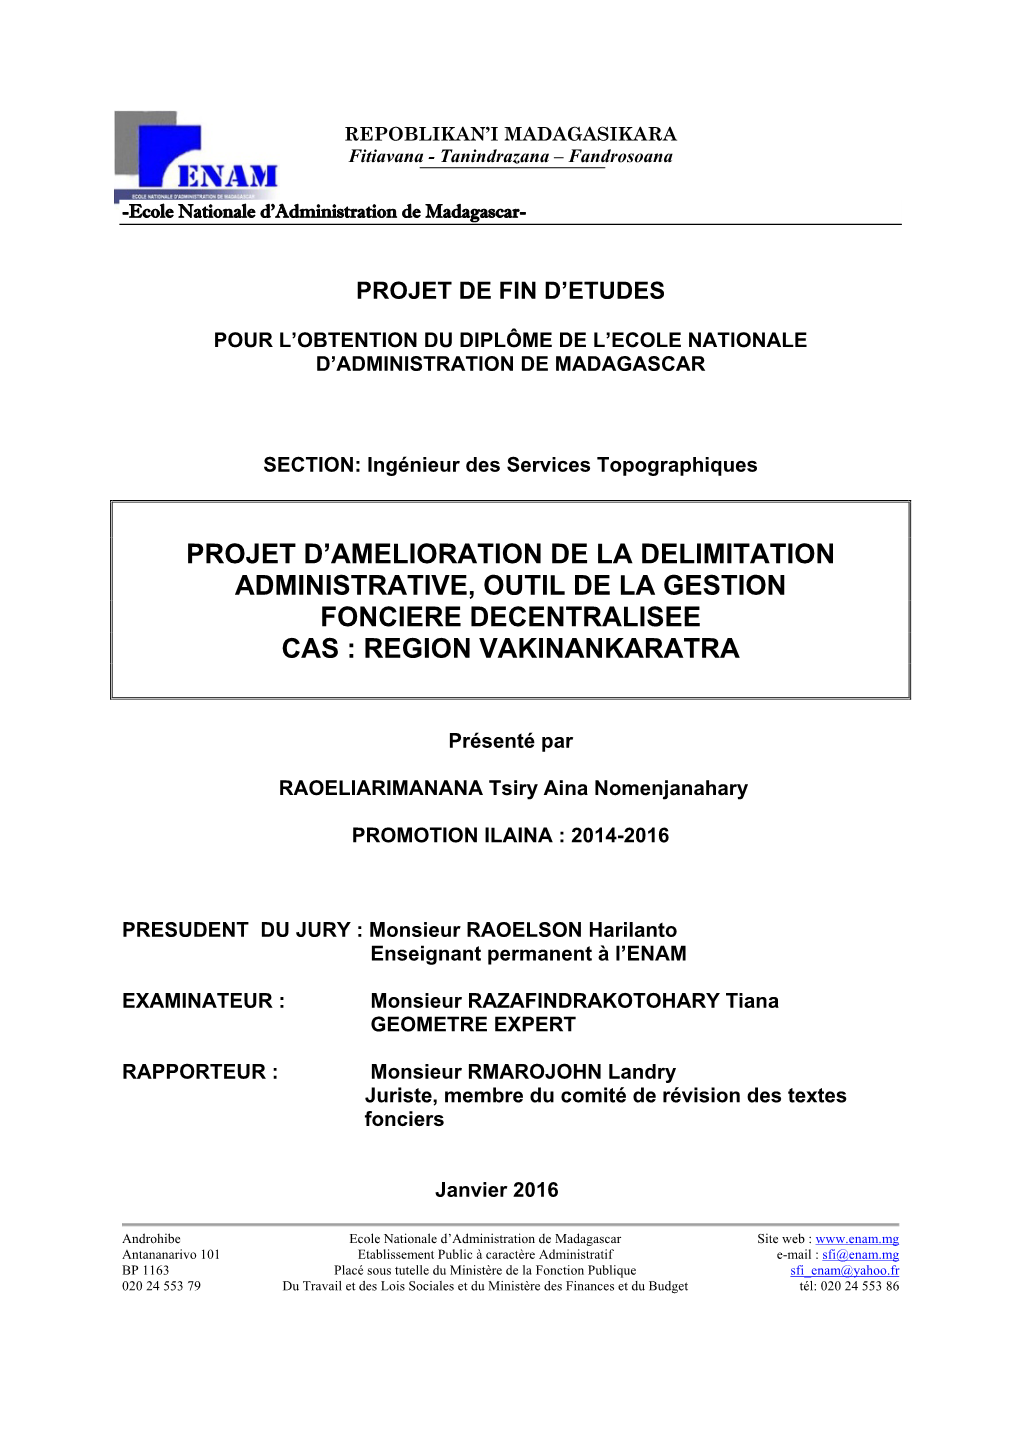 Projet D'amelioration De La Delimitation Administrative, Outil De La Gestion Fonciere Decentralisee